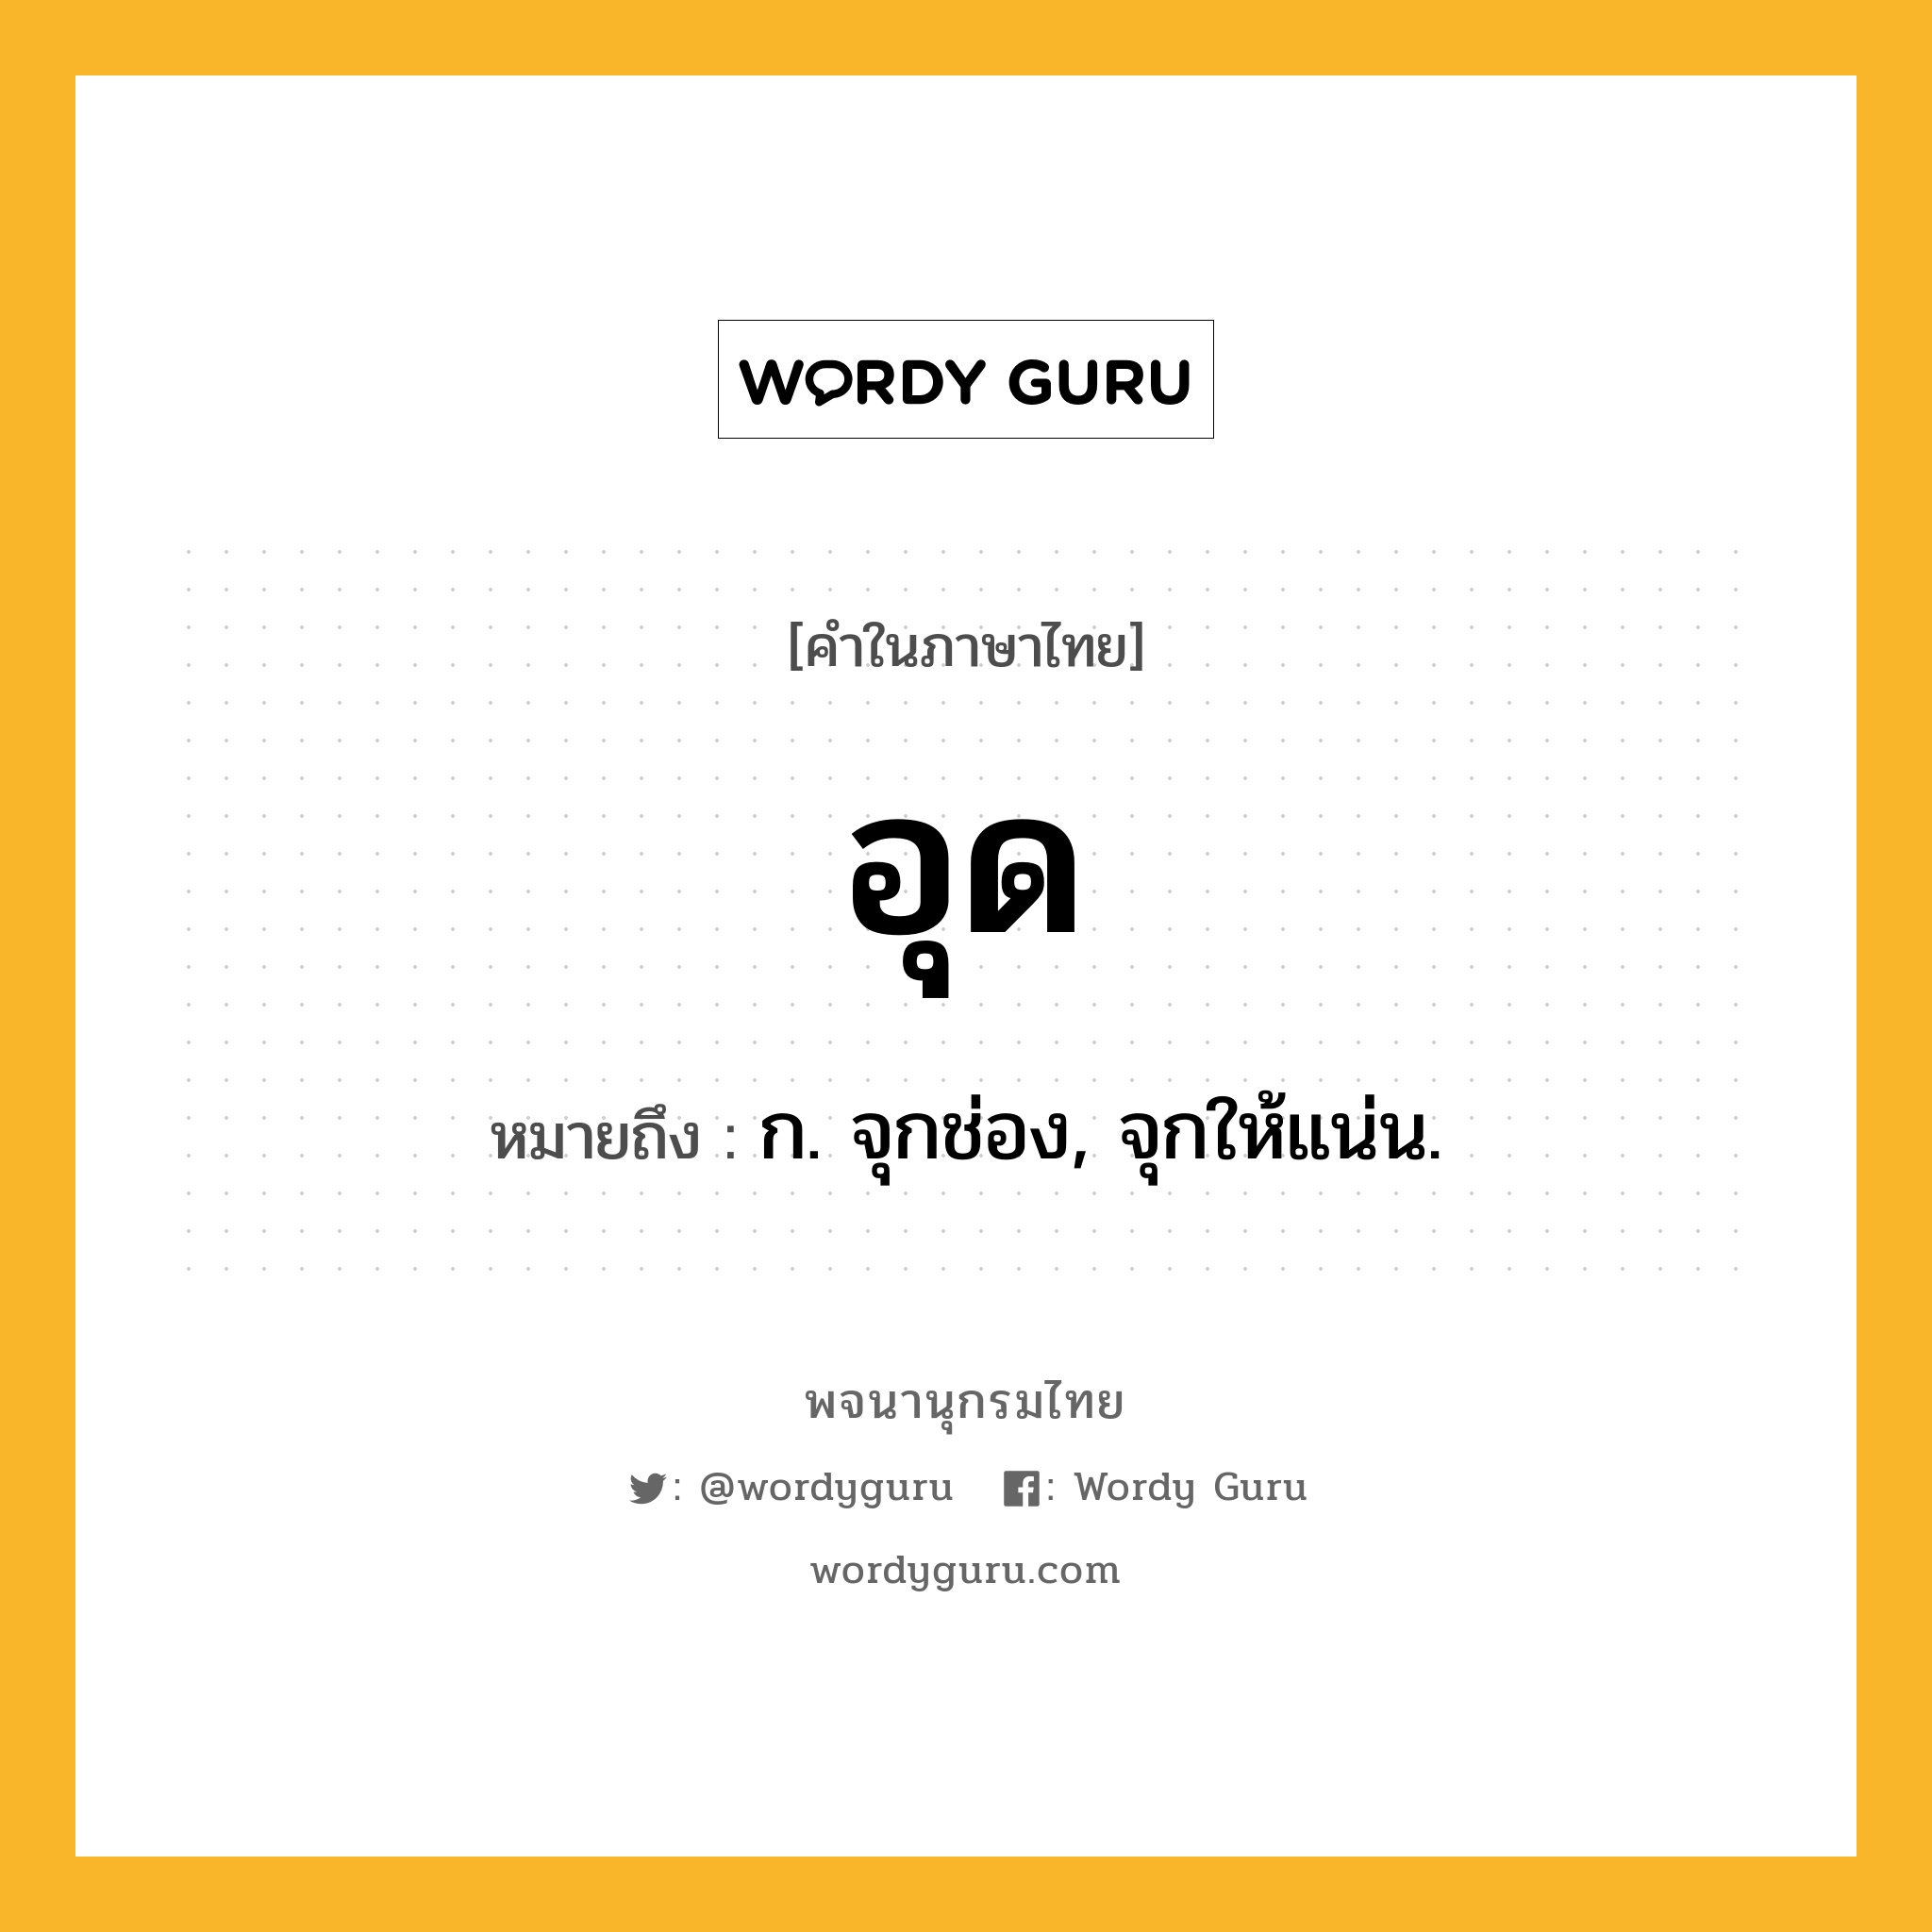 อุด ความหมาย หมายถึงอะไร?, คำในภาษาไทย อุด หมายถึง ก. จุกช่อง, จุกให้แน่น.